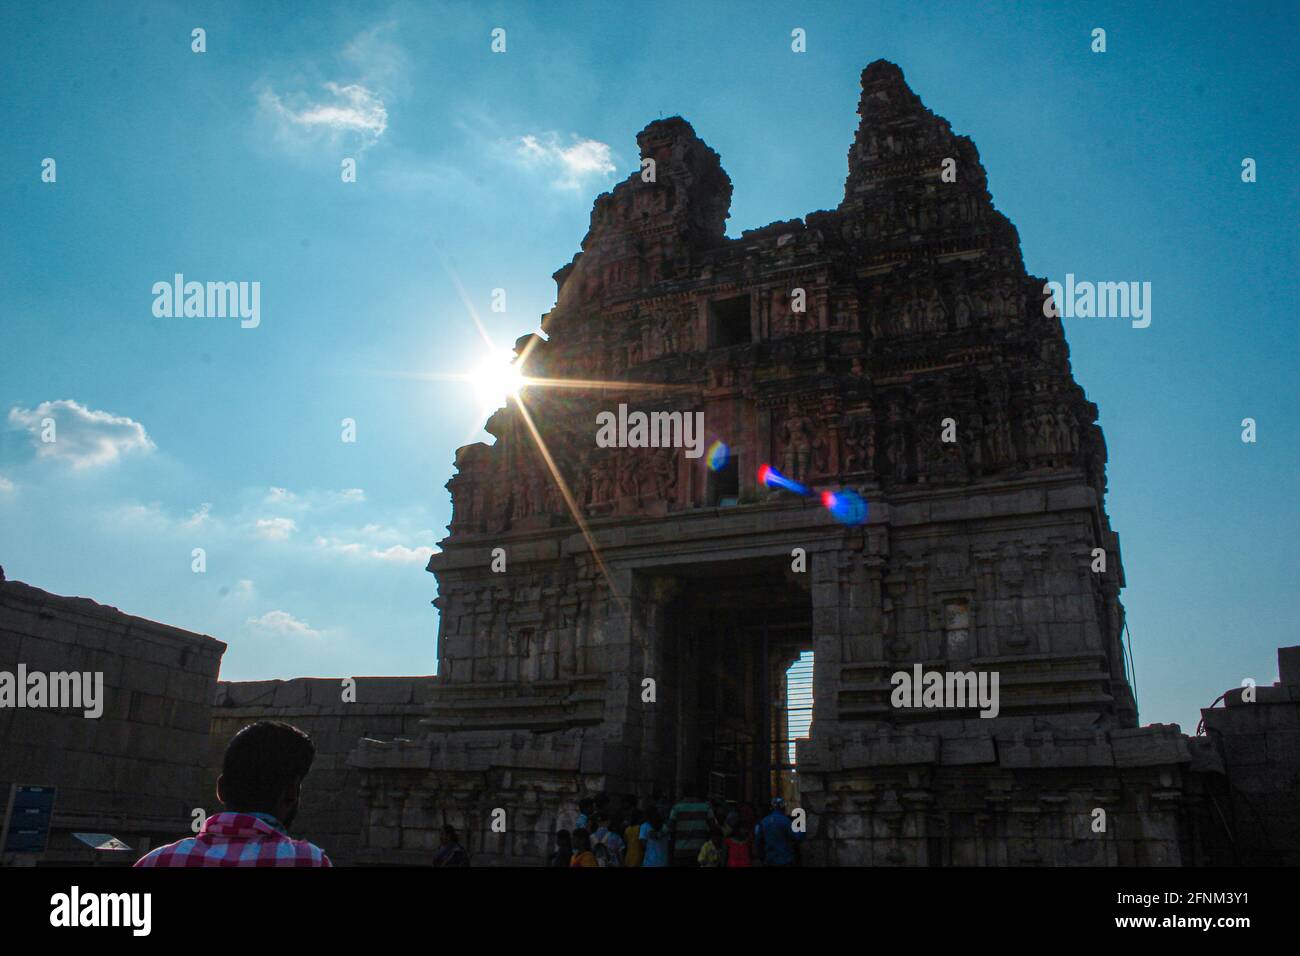 Alte indische Architektur und Landschaftsansicht von hampi, dem großen Architekturbeispiel Indiens. Stockfoto